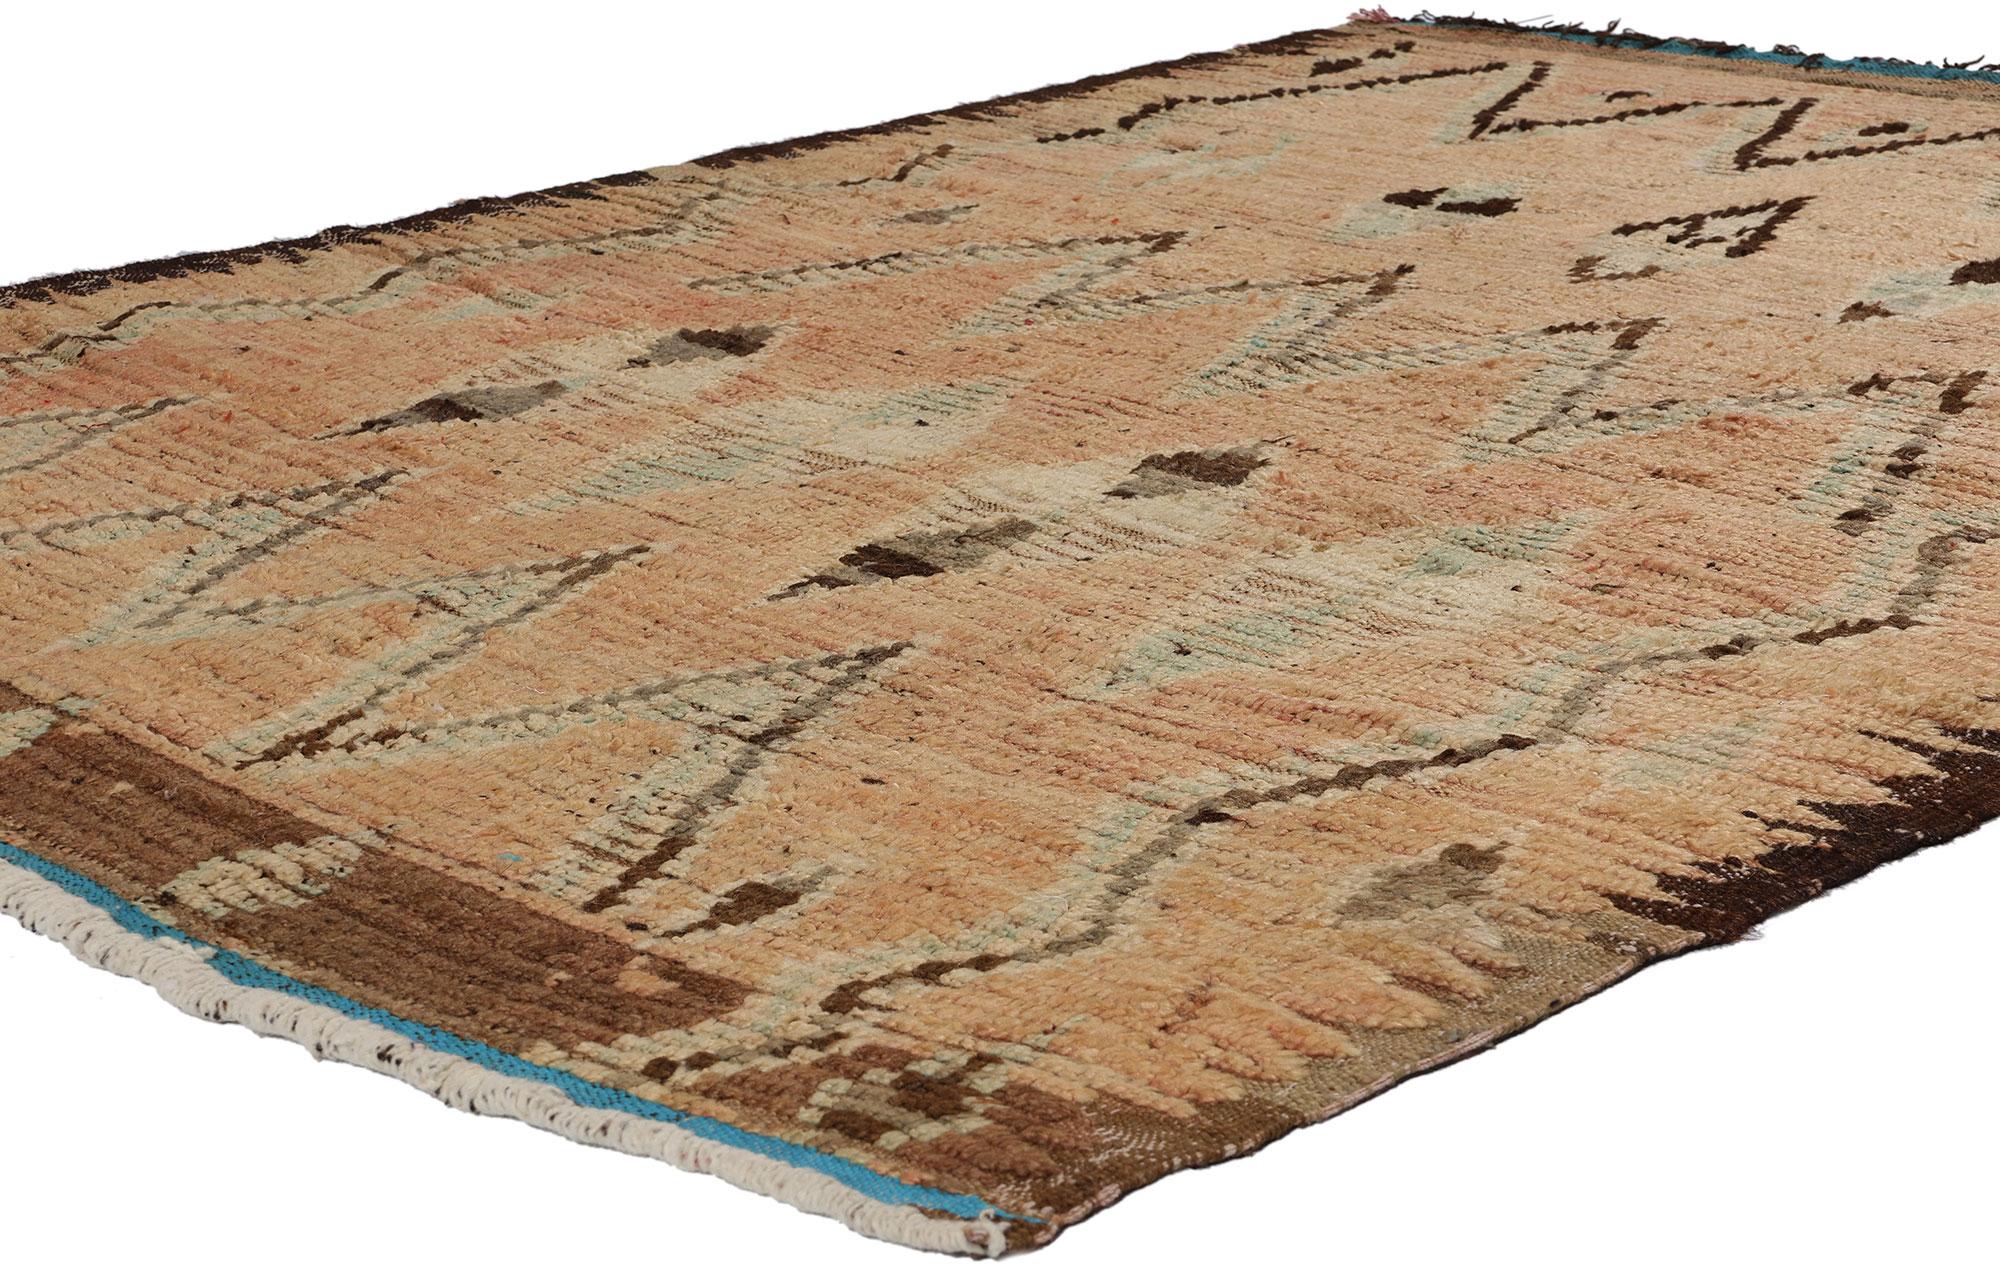 21725 Vintage Erdfarbener Marokkanischer Azilal-Teppich, 04'07 x 06'06. Die von geschickten Berberhandwerkern in der marokkanischen Region Azilal handgewebten erdigen marokkanischen Azilal-Teppiche zeichnen sich durch eine von den erdigen Farbtönen